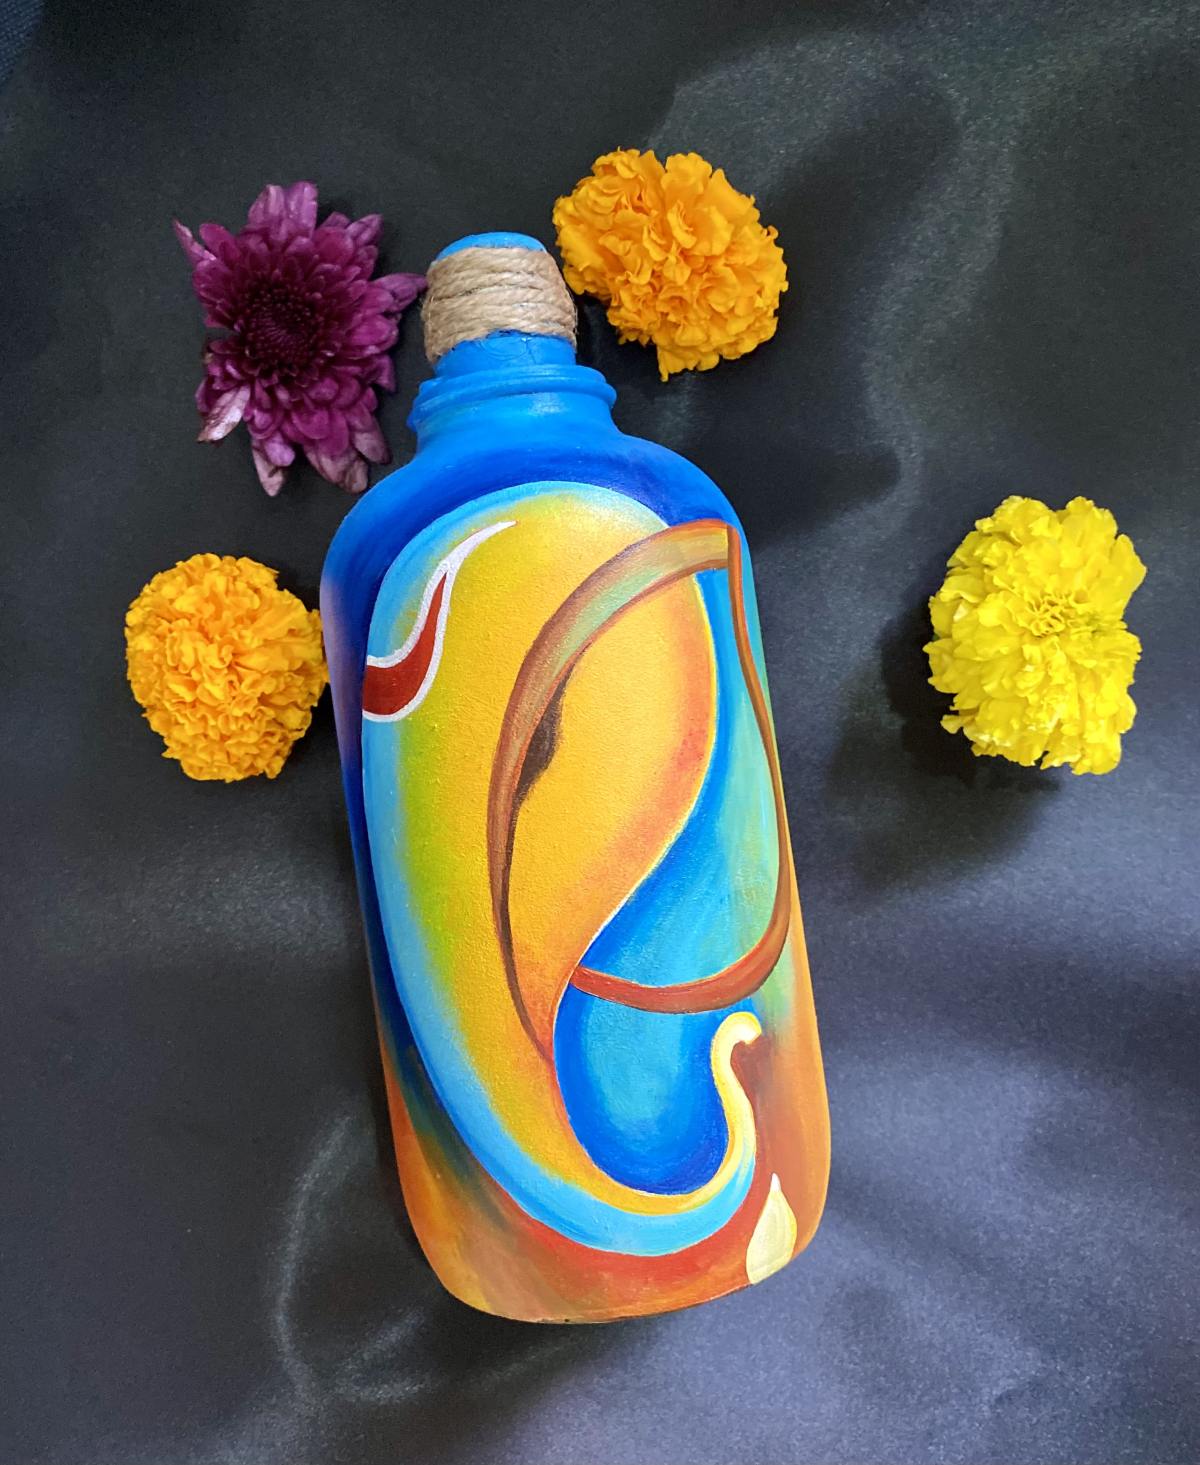 https://www.imagicart.in/wp-content/uploads/Hand-painted-ganesha-bottle-decor-1.jpg